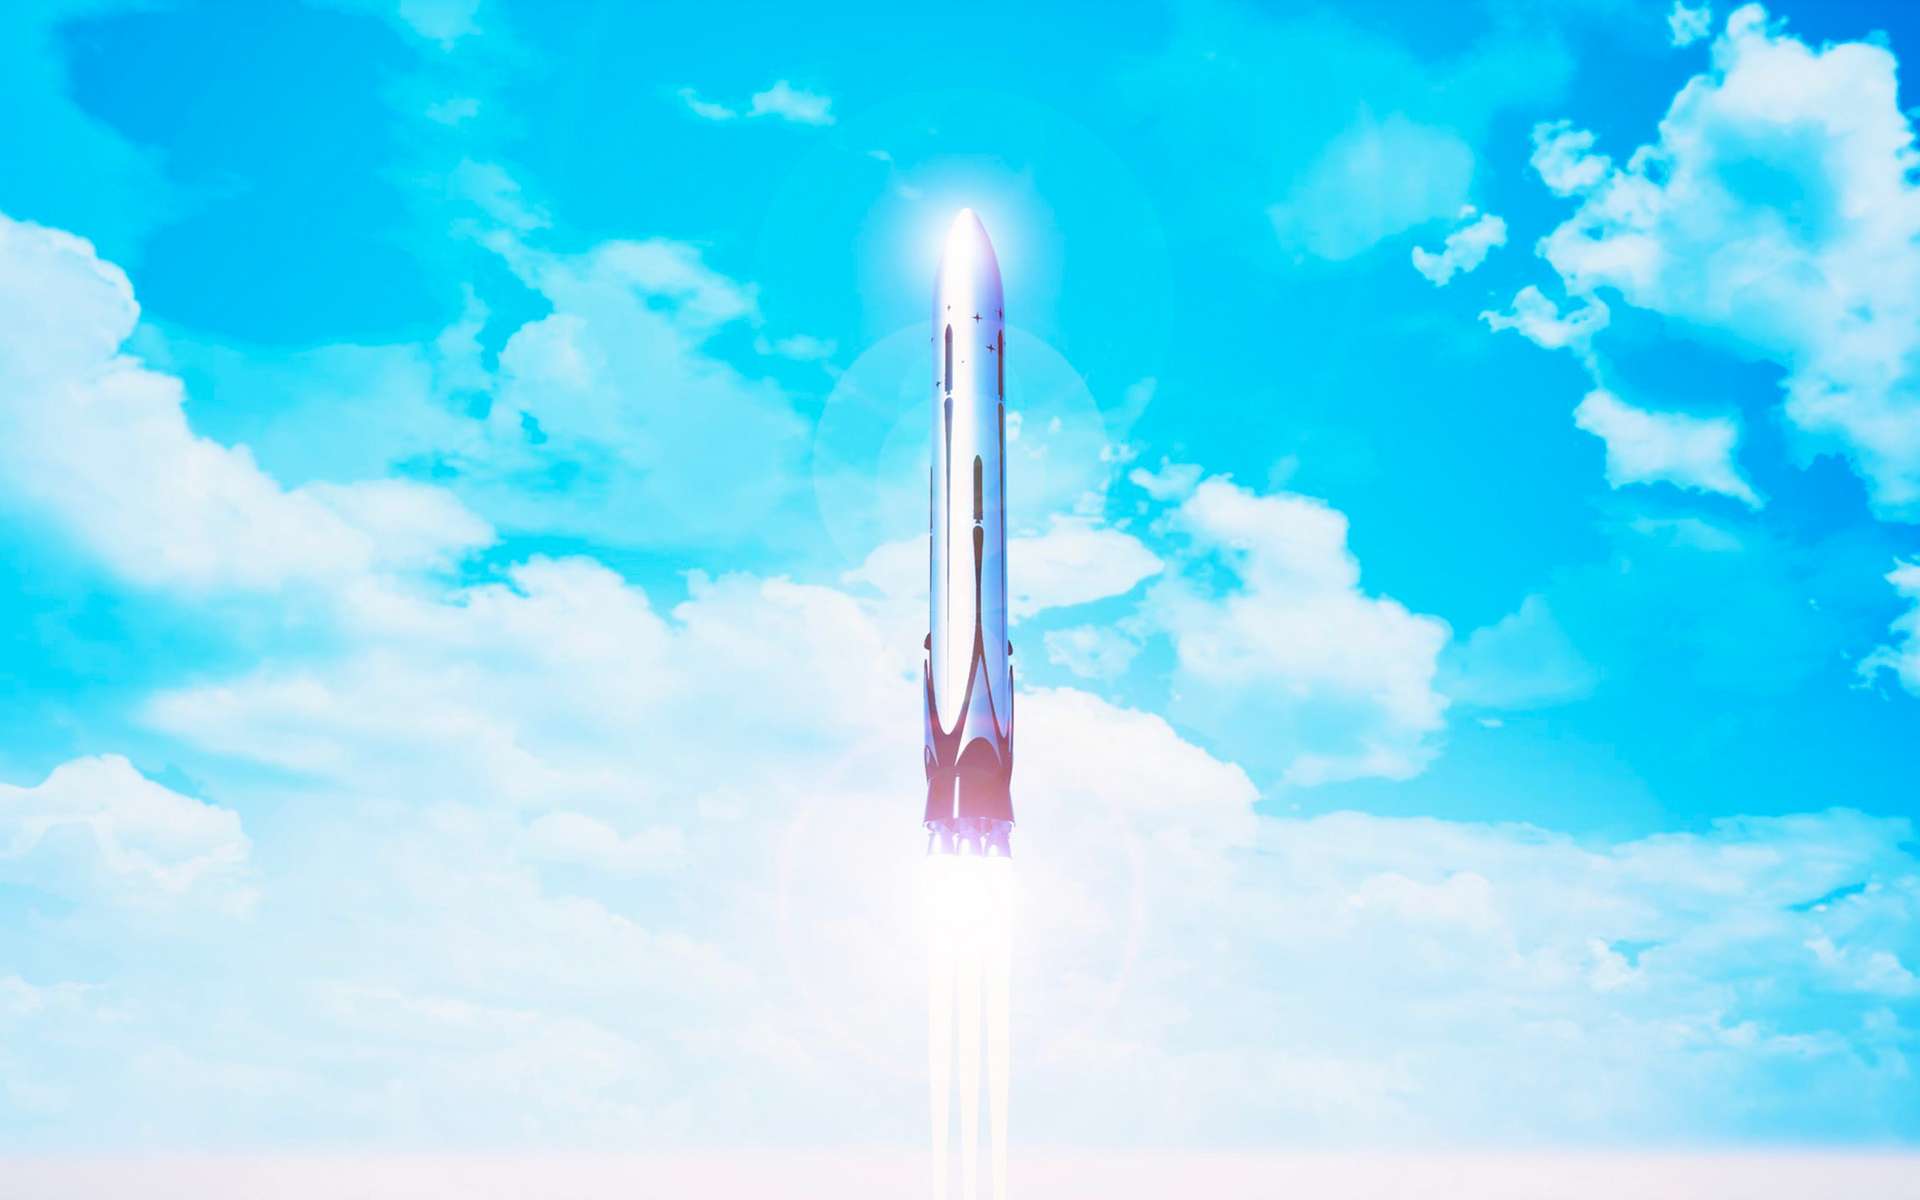 Vue d'artiste de Themis, démonstrateur d'étage réutilisable de lanceur spatial, en développement dans le cadre de la préparation des futures générations de lanceurs européens qui succéderont à l'actuelle famille Ariane 6. Ce démonstrateur sera propulsé par le moteur Prometheus. © ArianeGroup